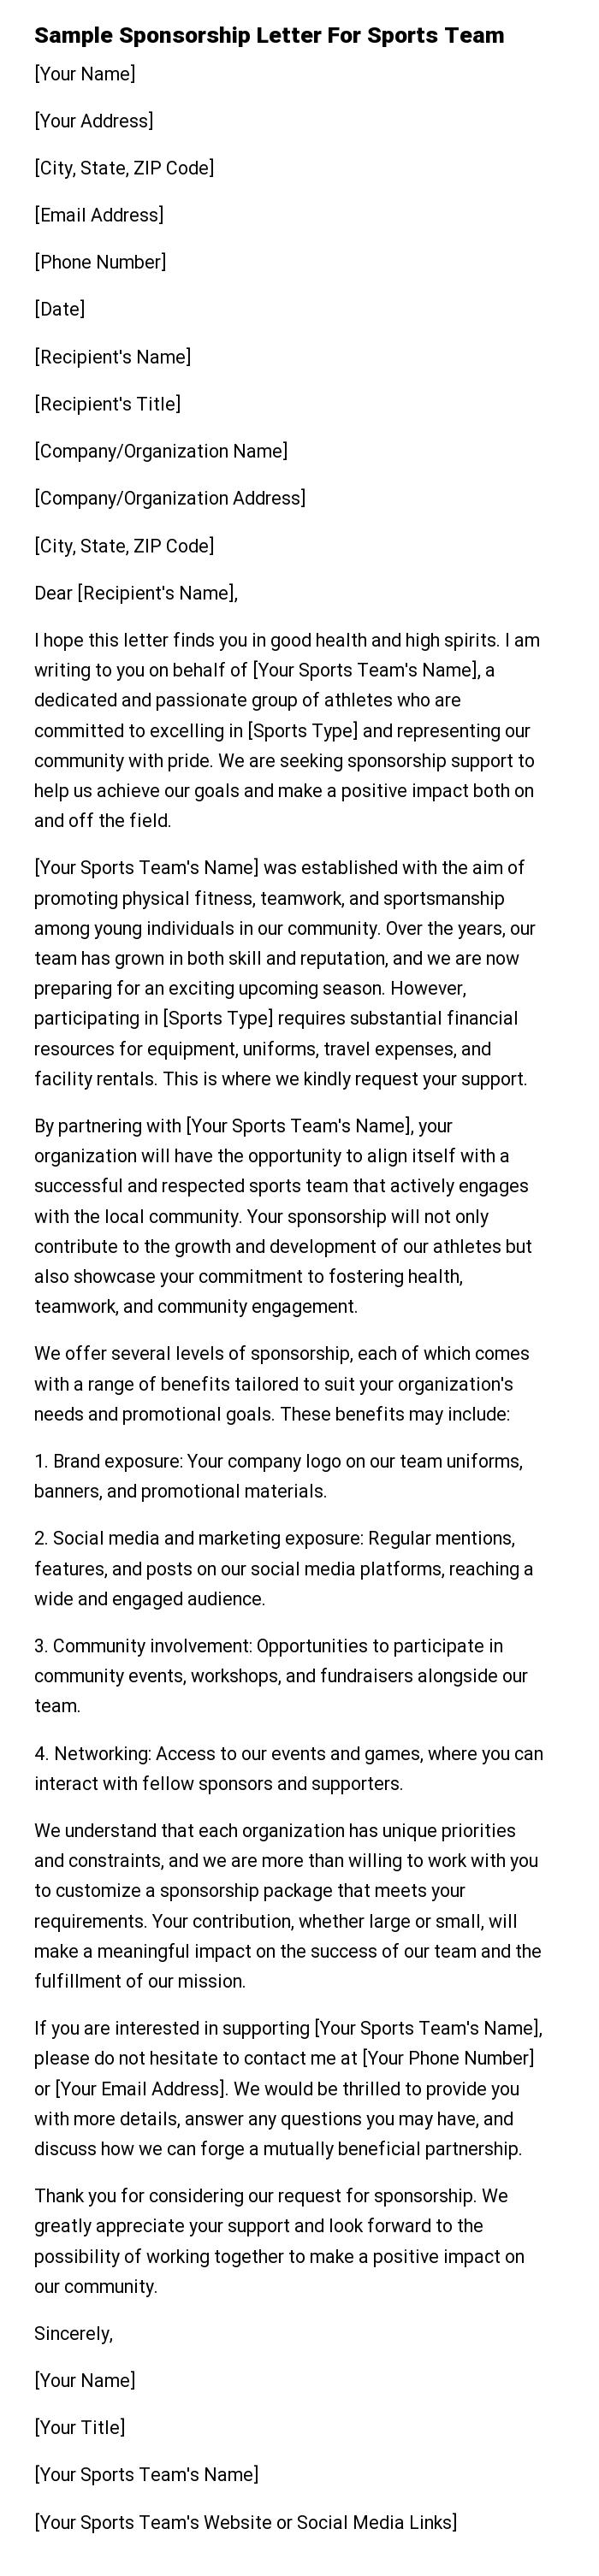 Sample Sponsorship Letter For Sports Team